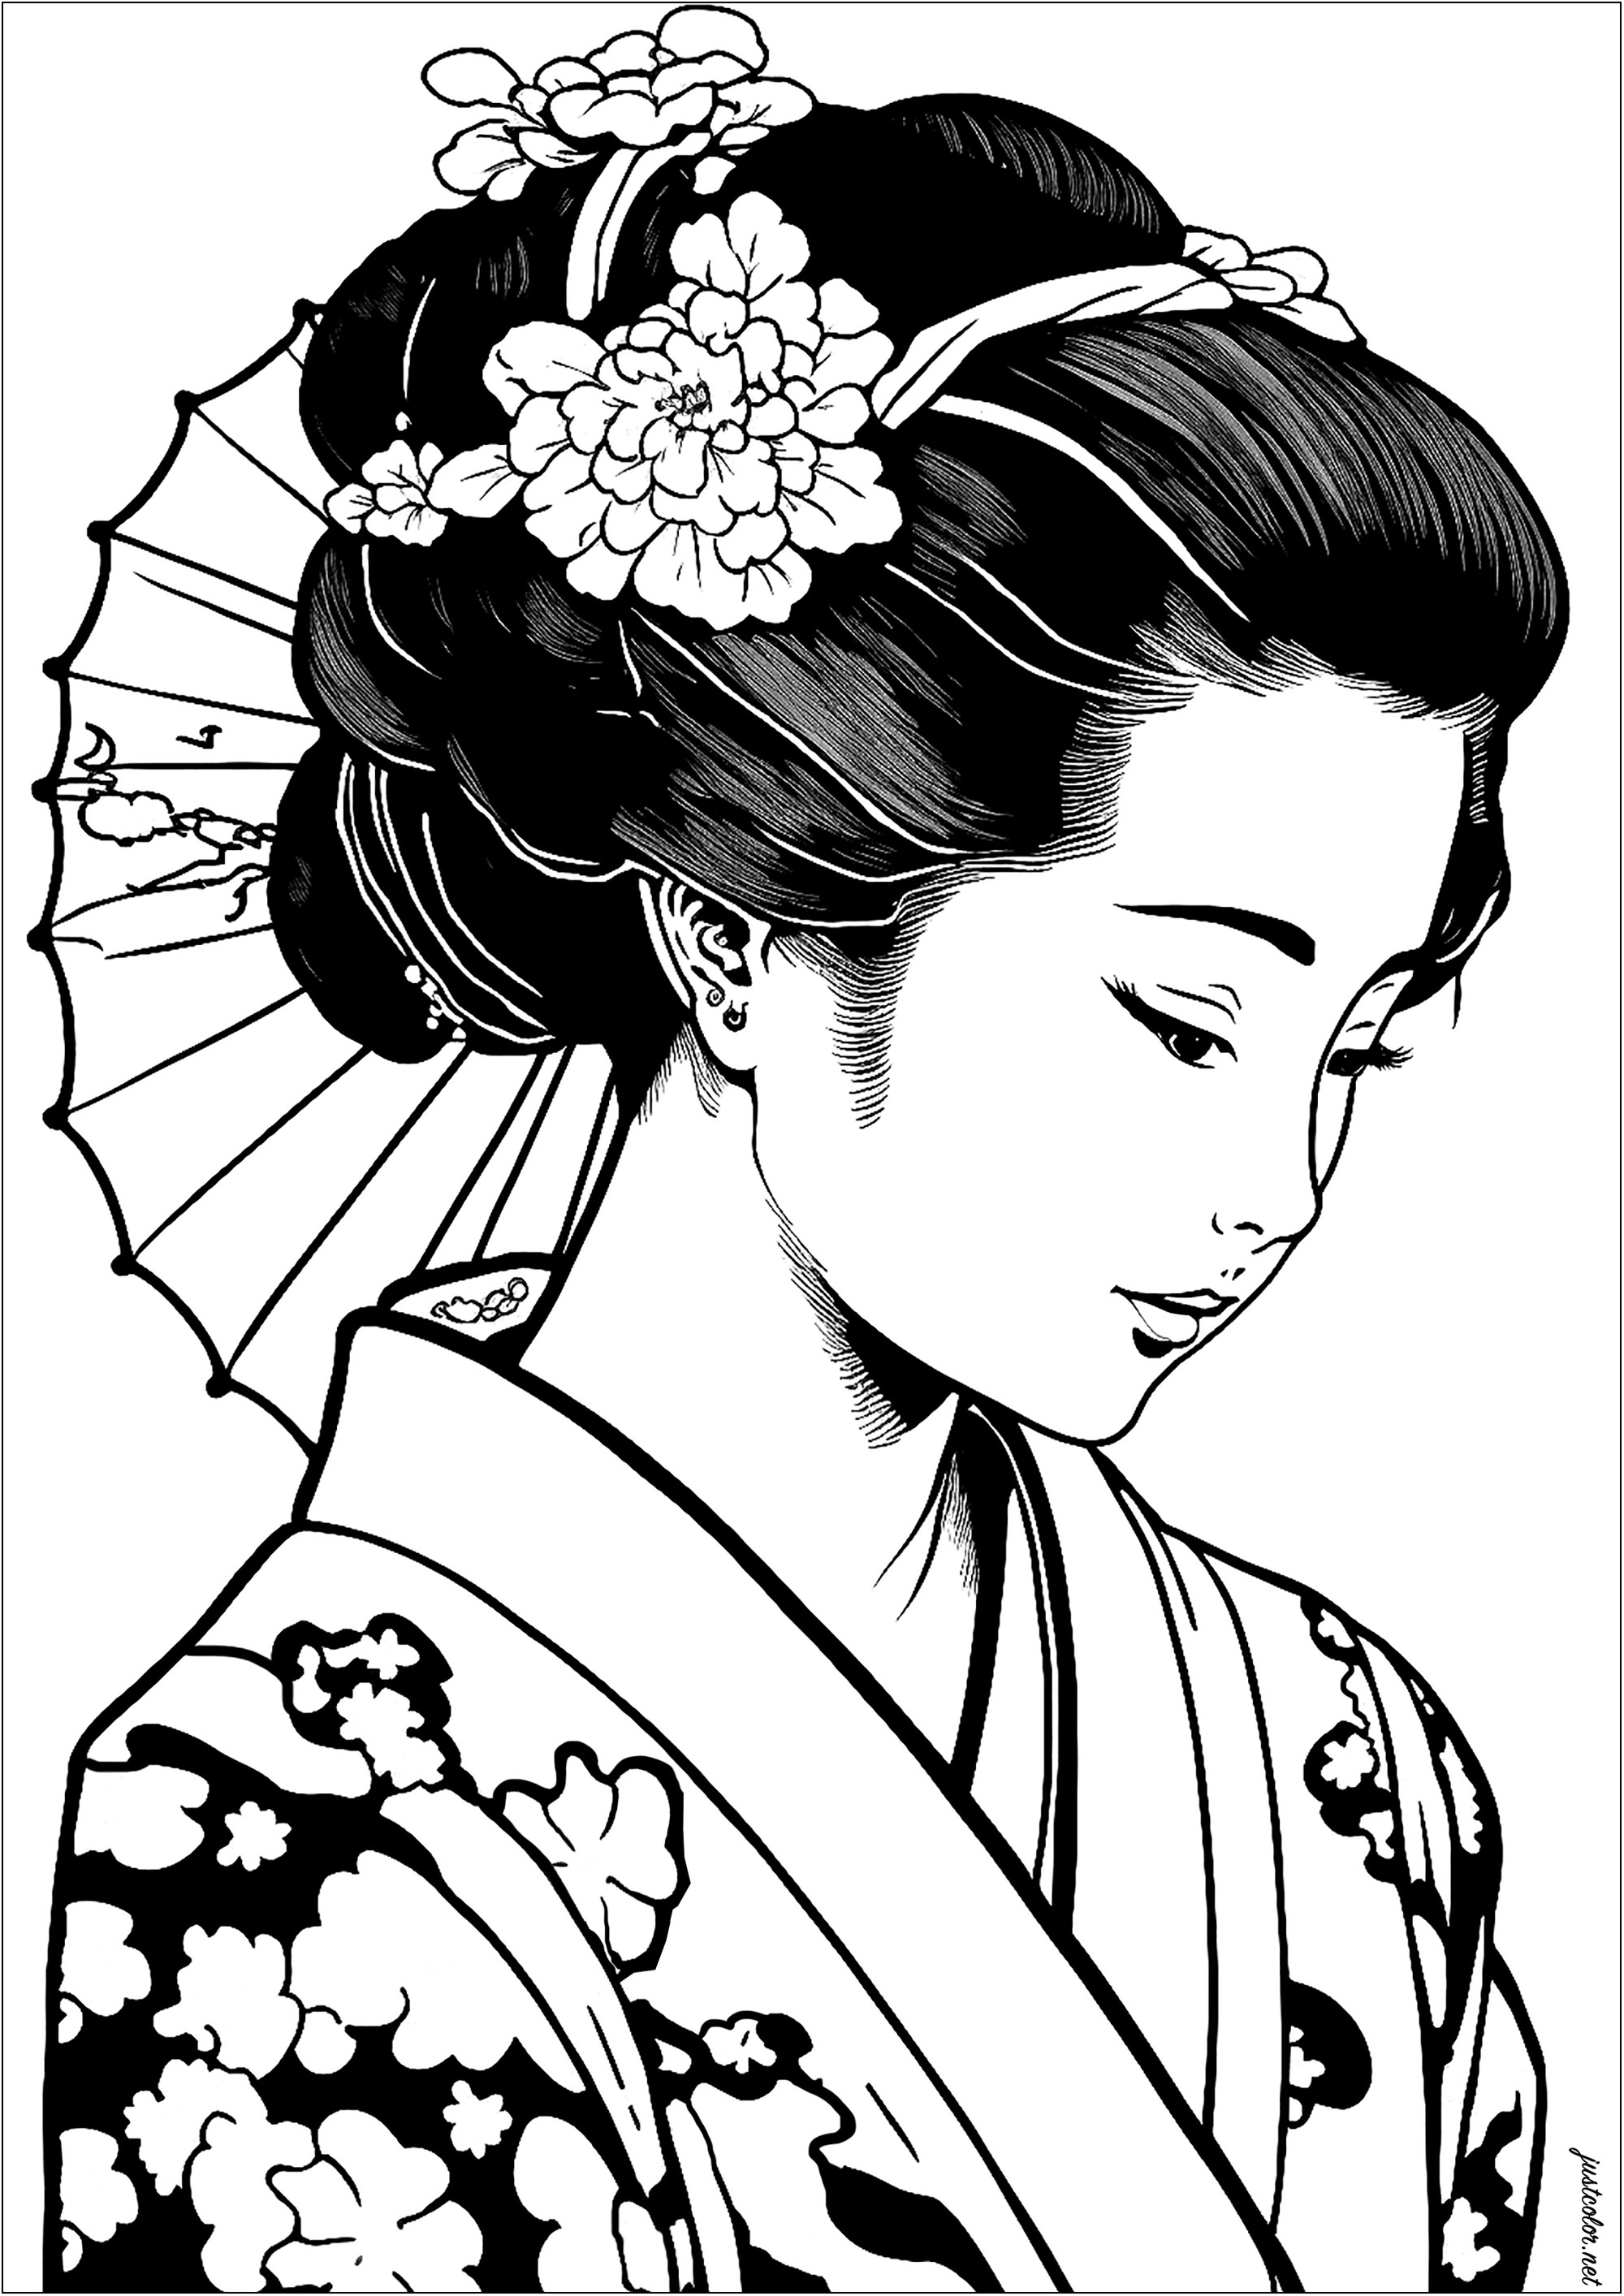 Eine hübsche Geisha, sehr realistisch, zum Ausmalen. Diese Malvorlage ist sowohl elegant als auch charmant. Lassen Sie Ihrer Fantasie freien Lauf und fügen Sie schöne Farben zu ihrem Kimono, ihrem Sonnenschirm und den Blumen auf ihrem Stirnband hinzu.